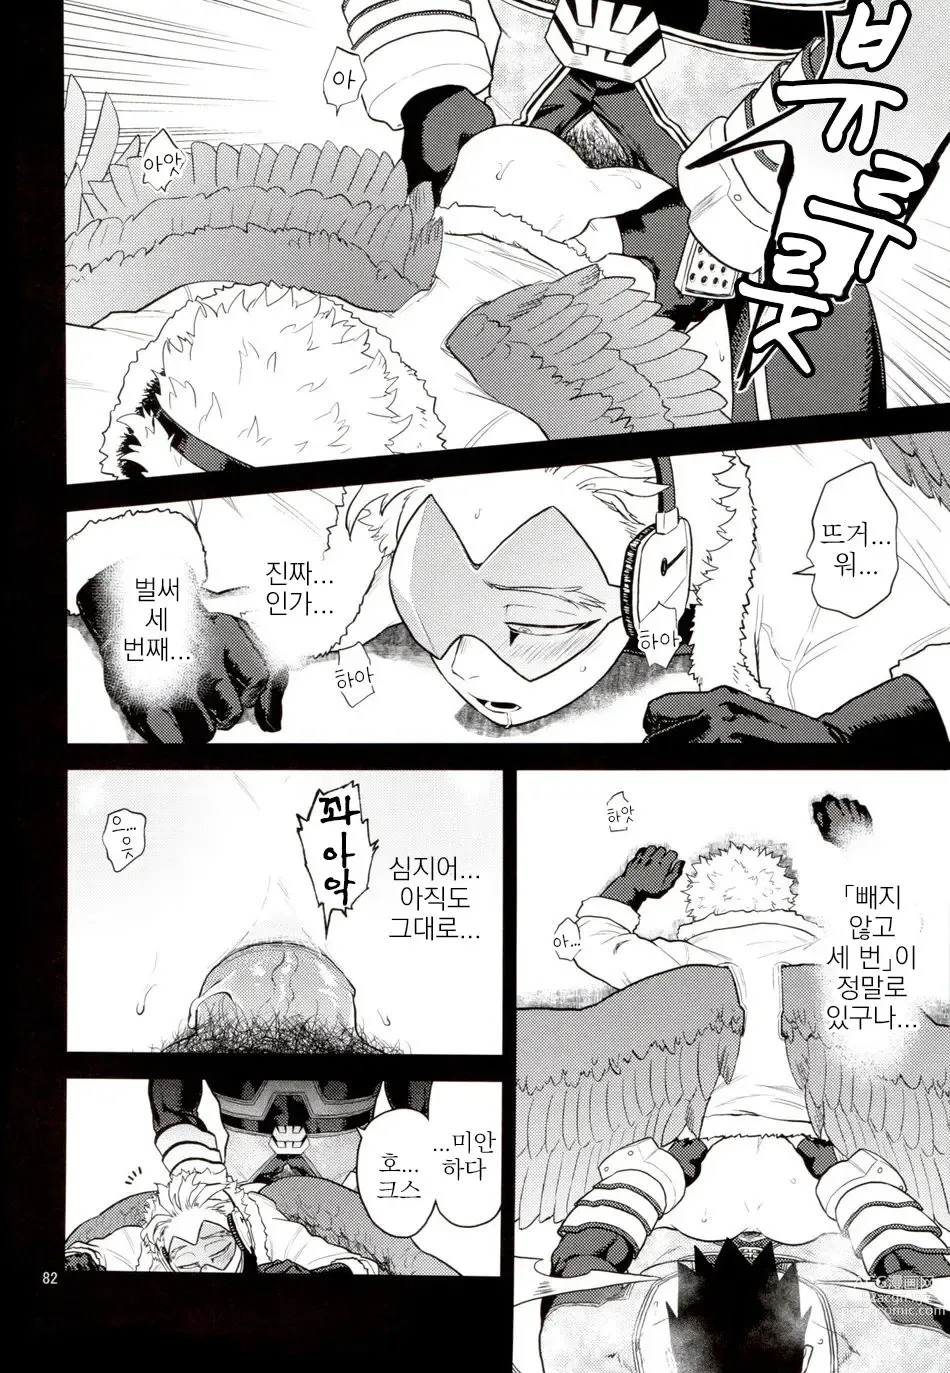 Page 81 of doujinshi Enholog #01